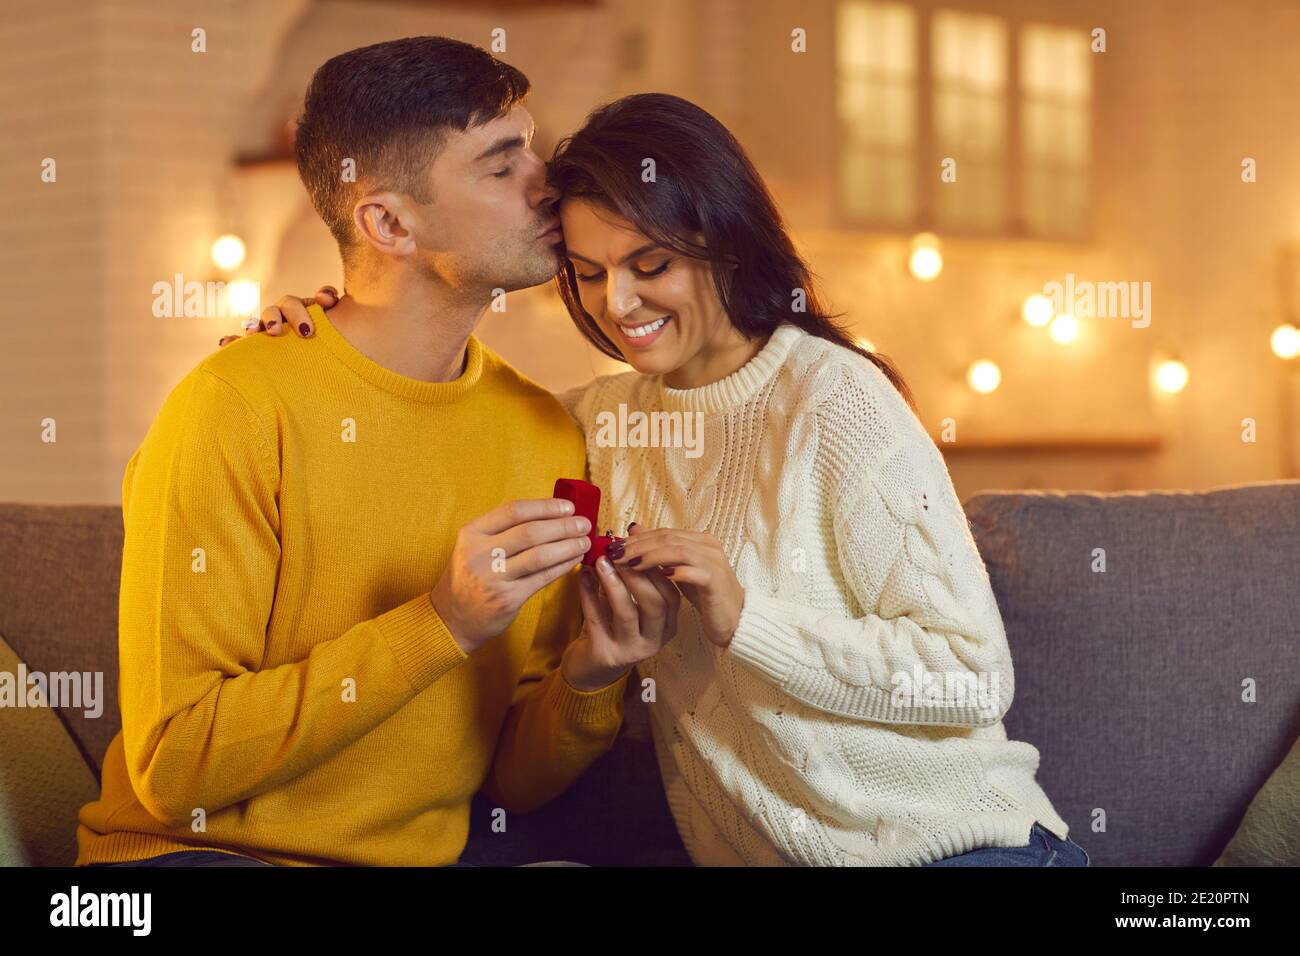 Jeune femme souriante qui reçoit la proposition avec anneau de son petit ami Pendant la fête de la Saint-Valentin Banque D'Images